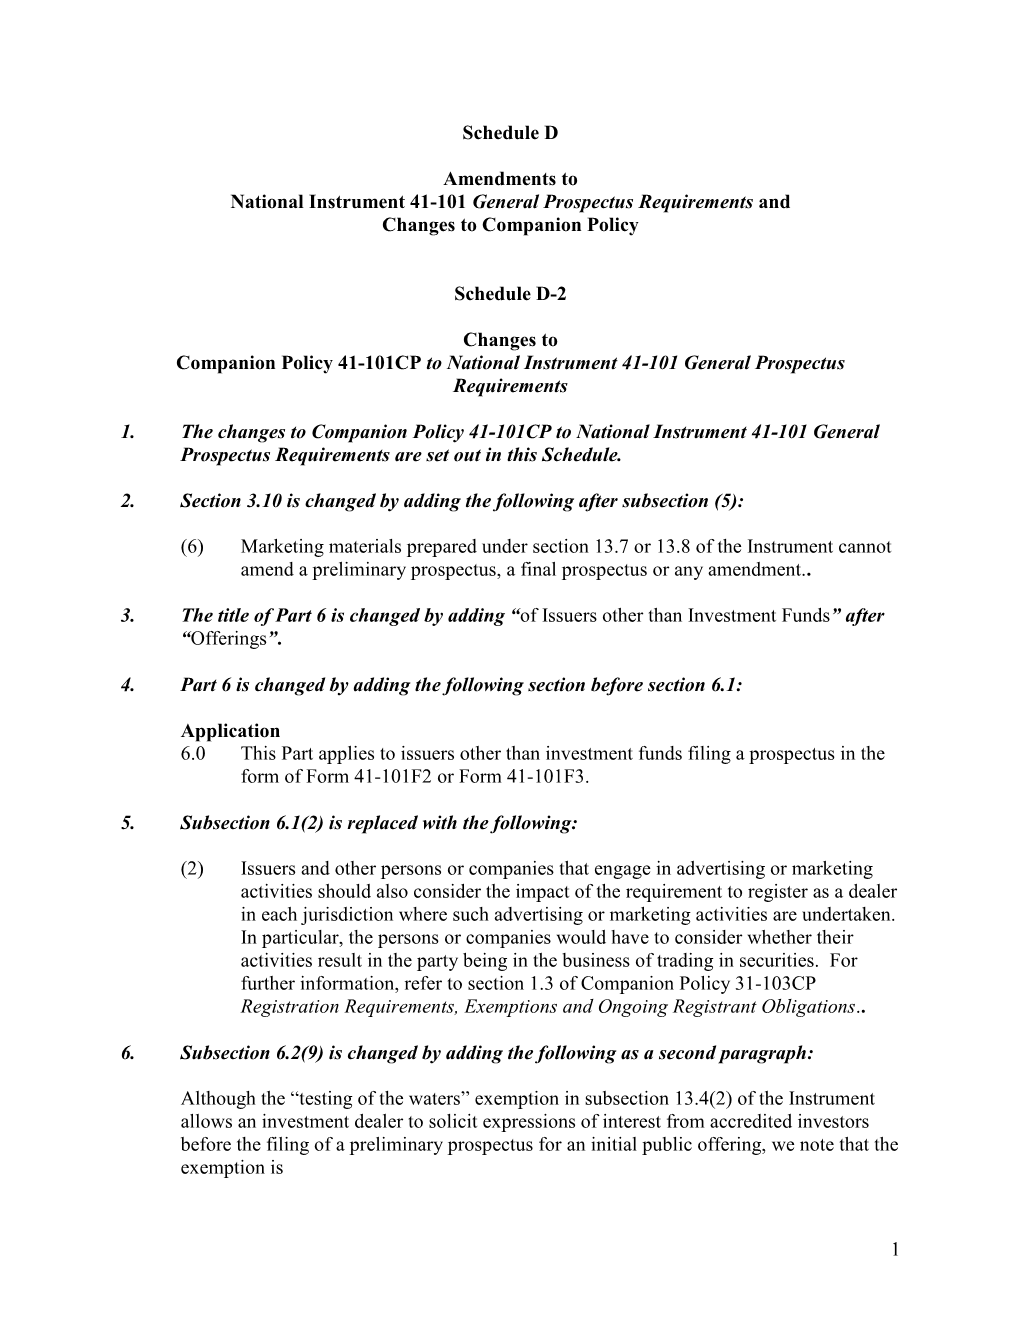 41-101CP [CP Amendment Advance Notice] (Schedule D-2)